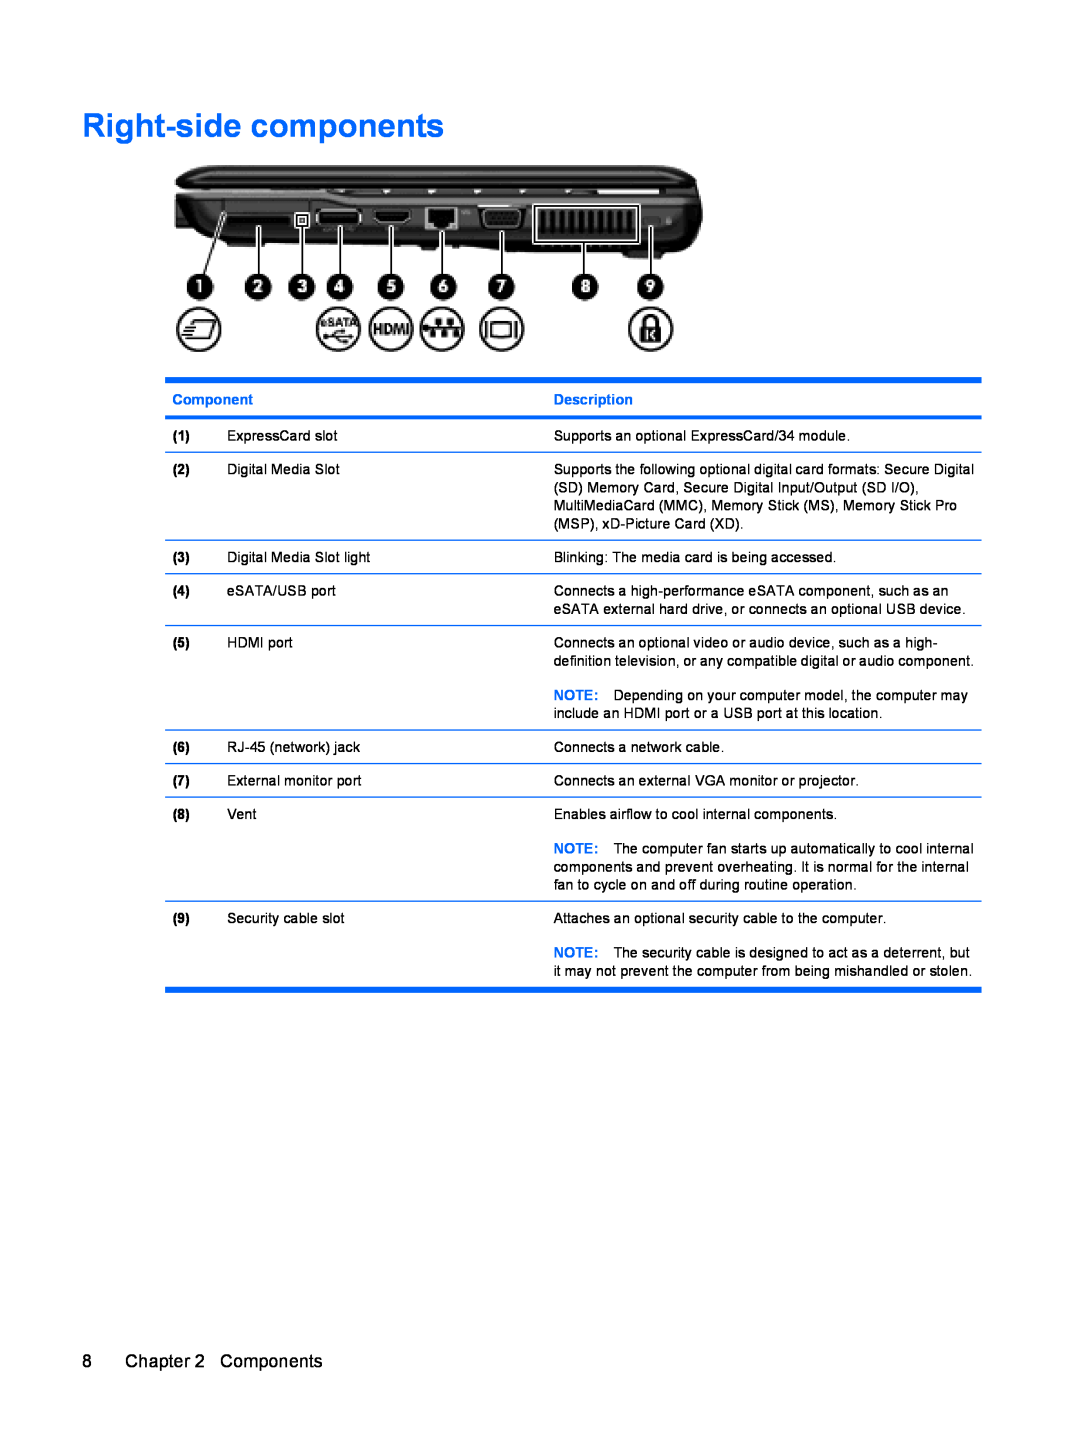 HP CQ35-202TX, CQ35-229TX, CQ35-226TX, CQ35-227TX, CQ35-224TX, CQ35-225TX manual Right-side components, Components, Description 